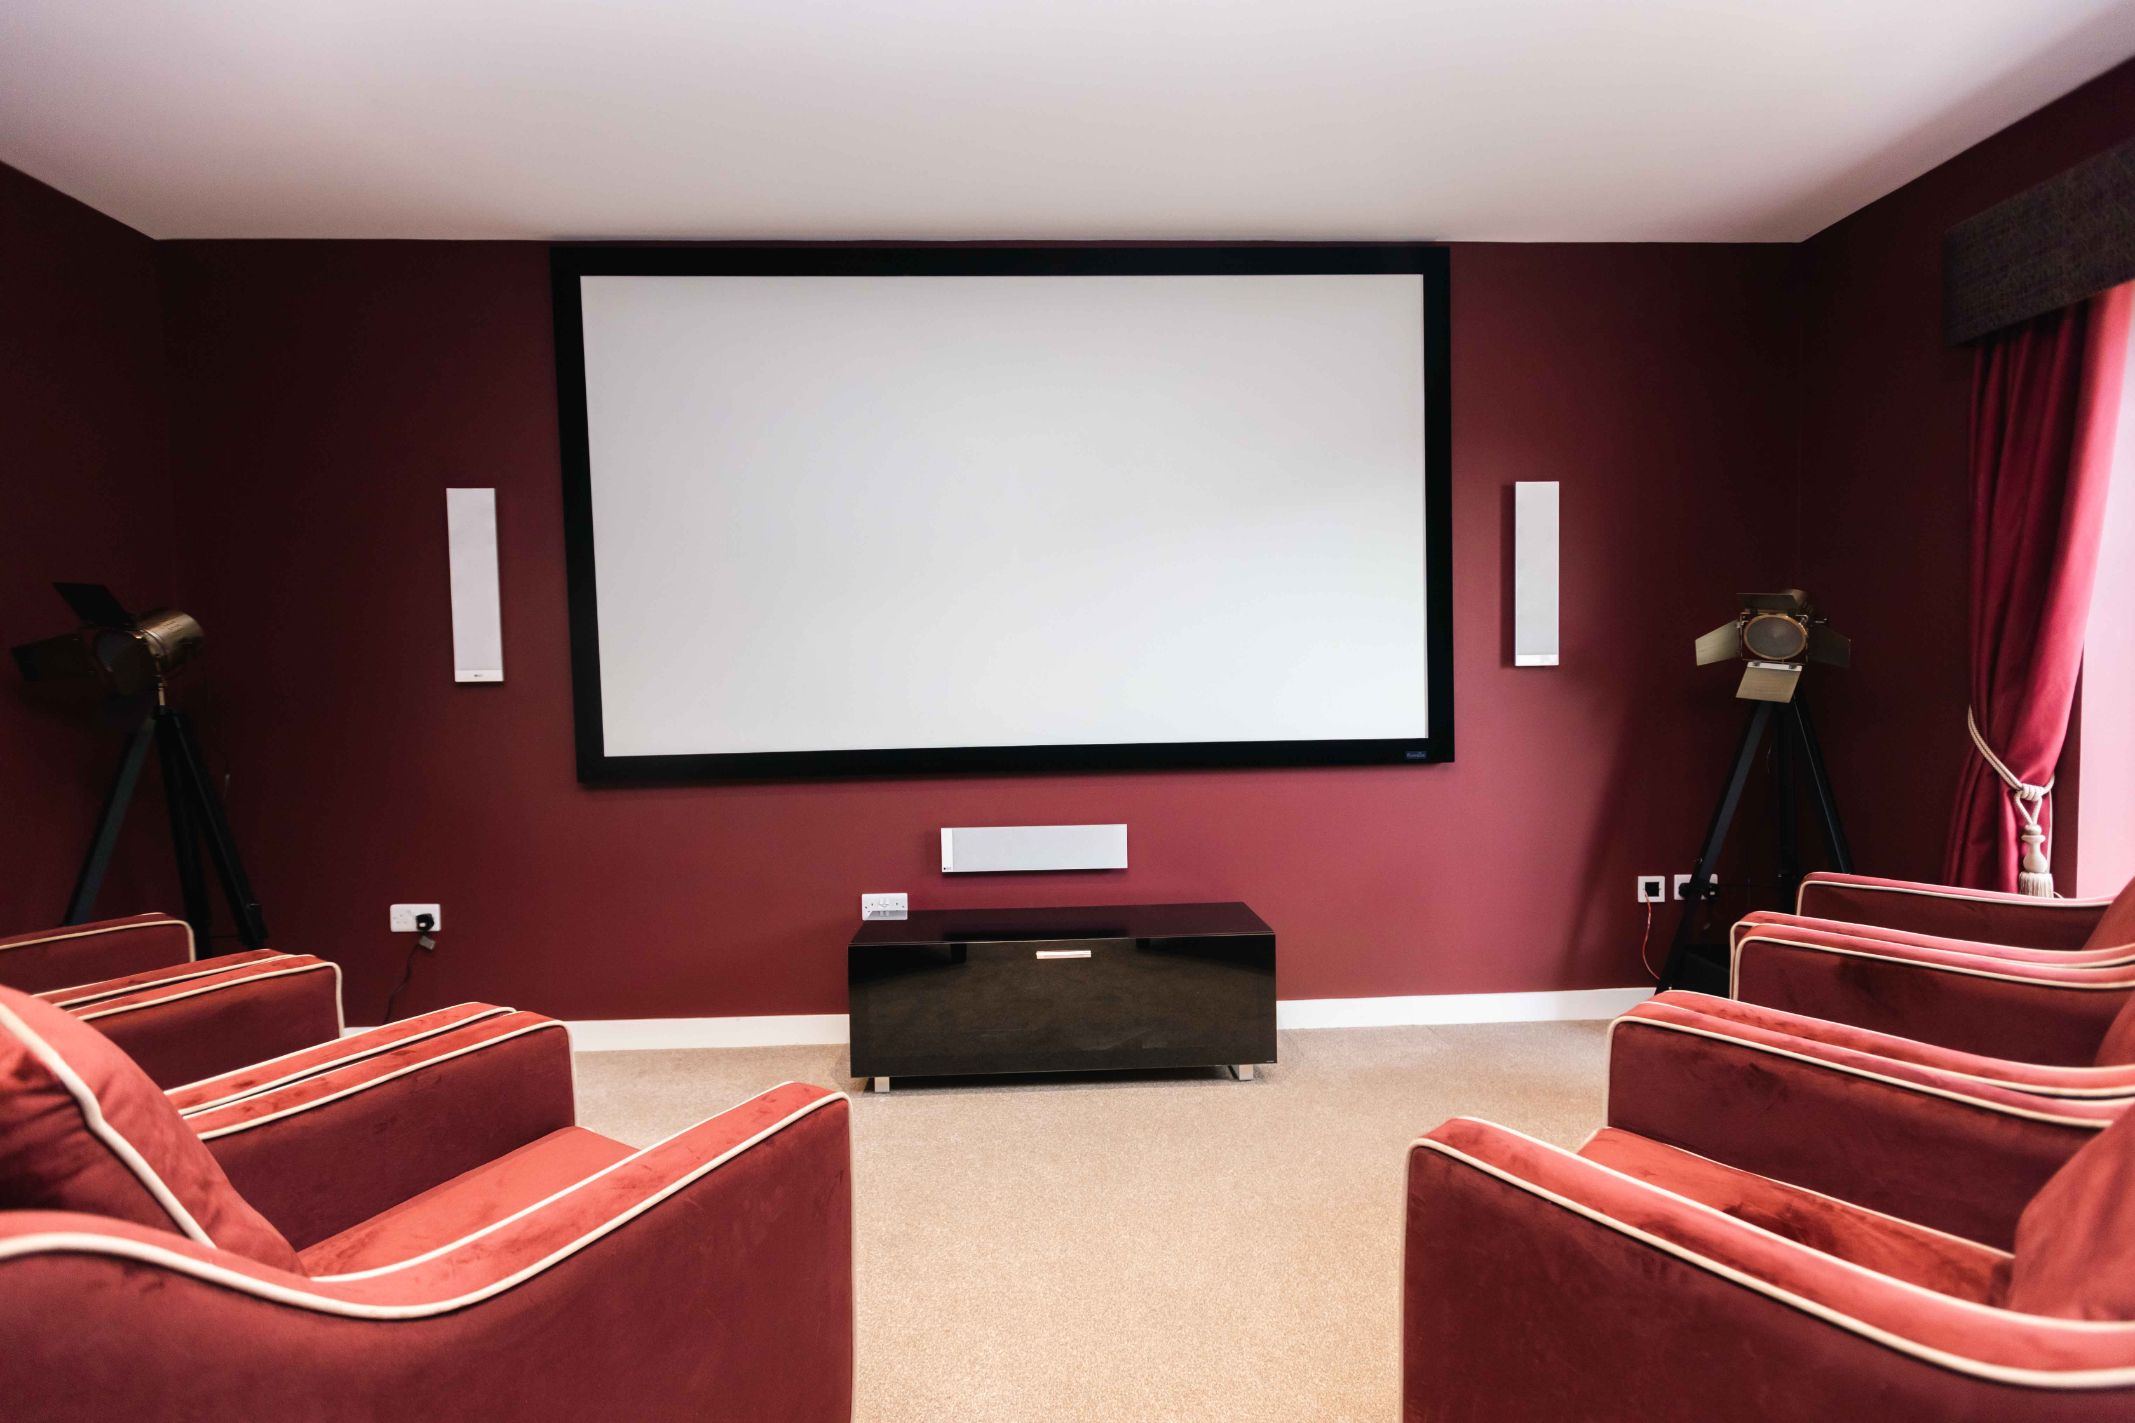 Projector Screen in Cinema Room